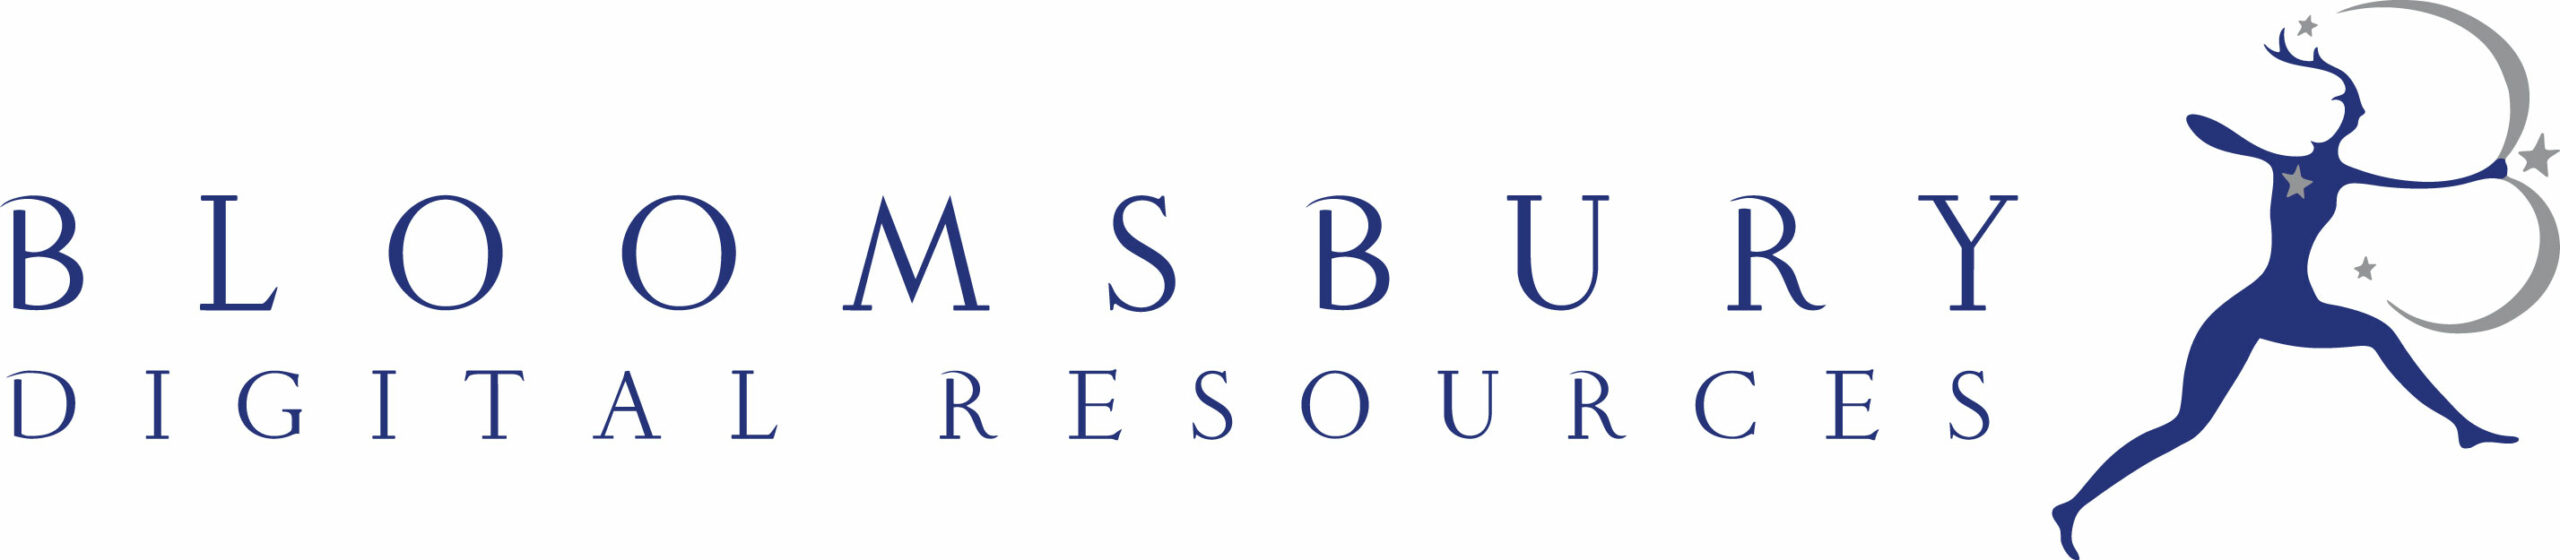 Bloomsbury-Digital-Resources_1